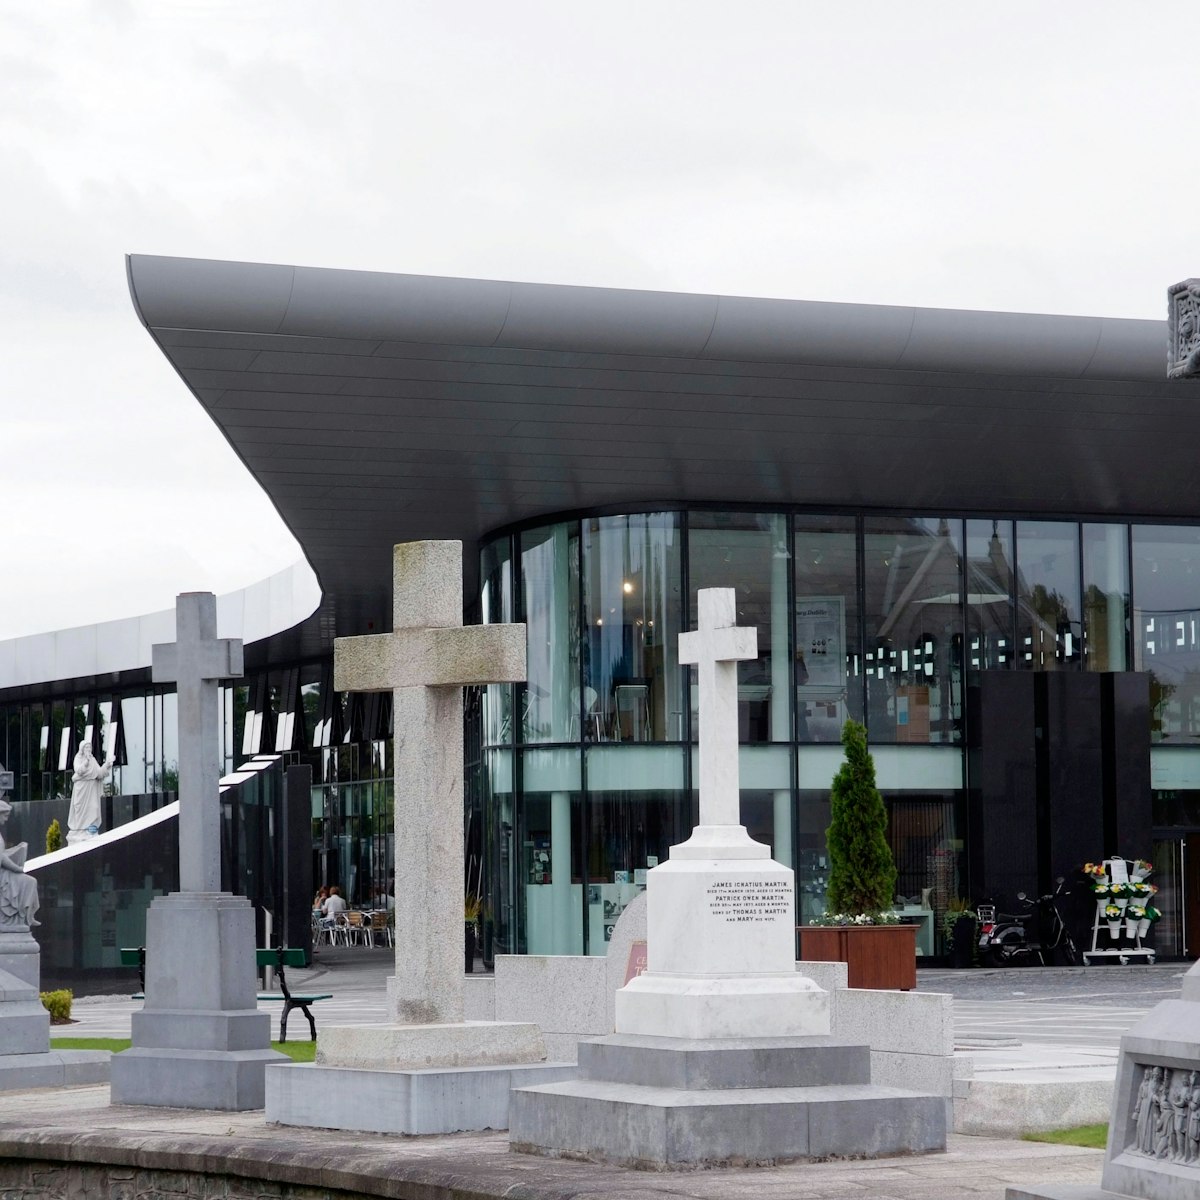 CF6A45 IRELAND, Dublin, Glasnevin Cemetery, Visitor Centre

Glasnevin Cemetery Museum
